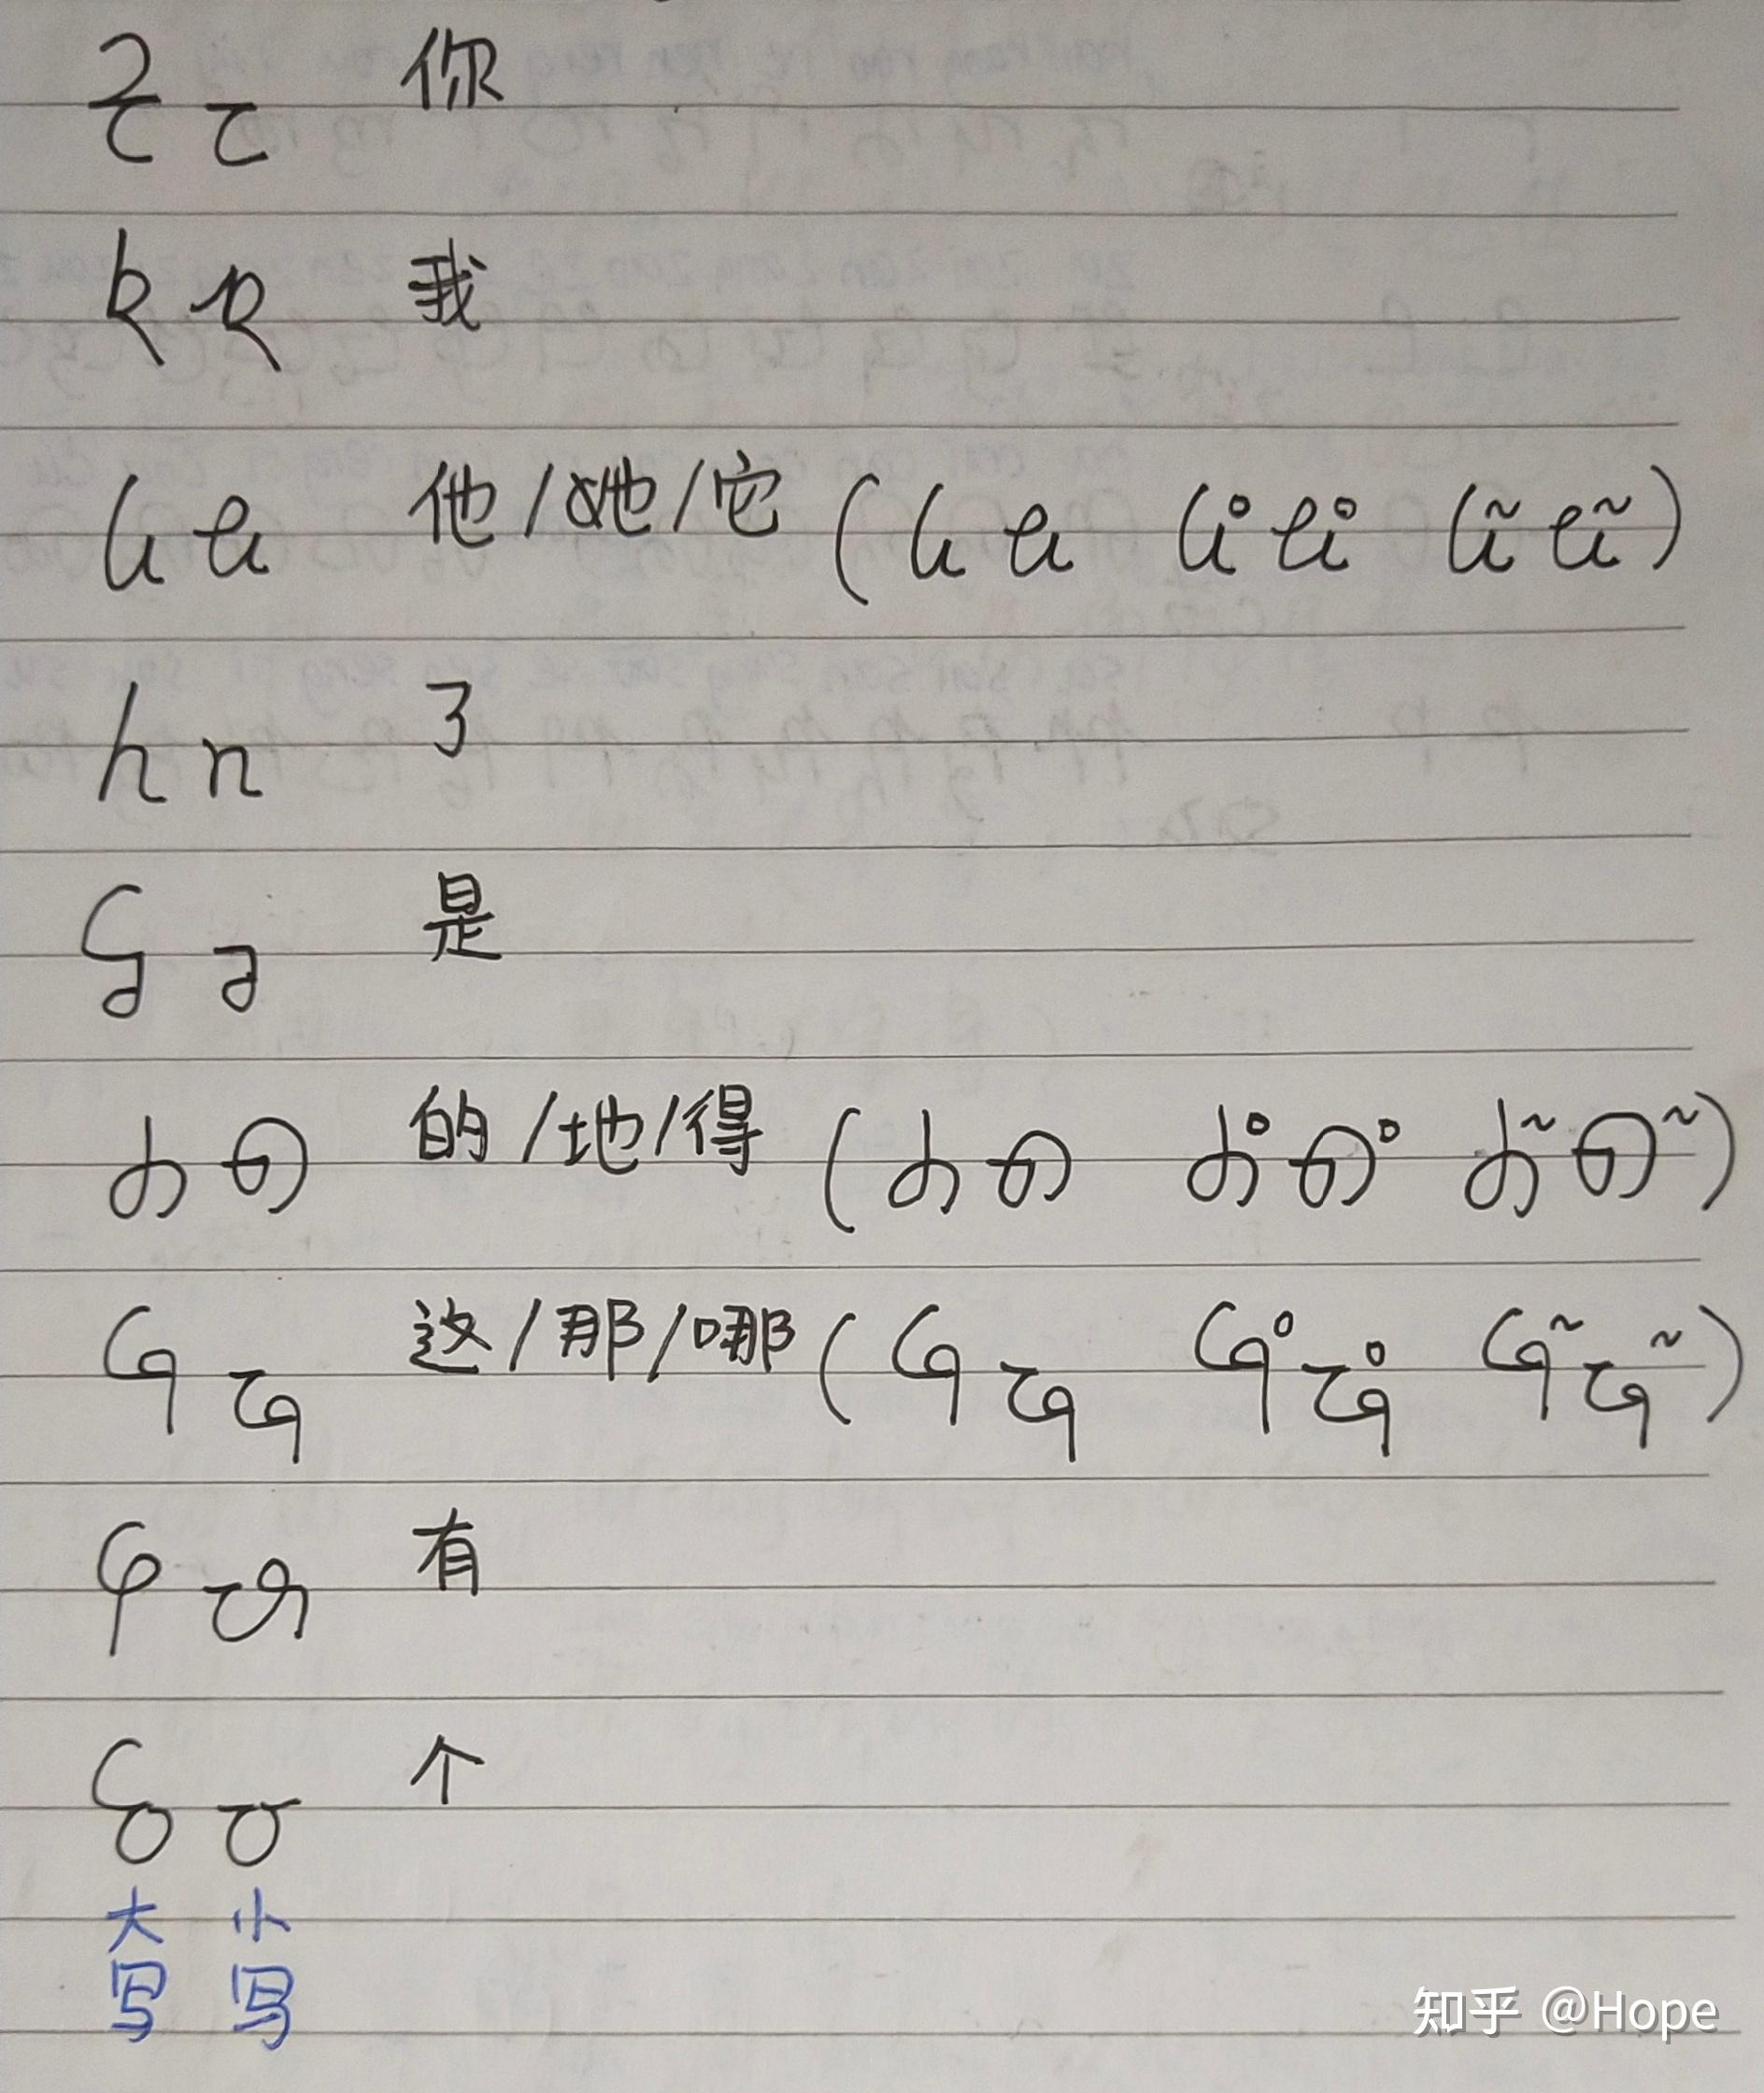 左边一排是韵母手写体及其简化版,加上汉语拼音来对照,右边一排是每个